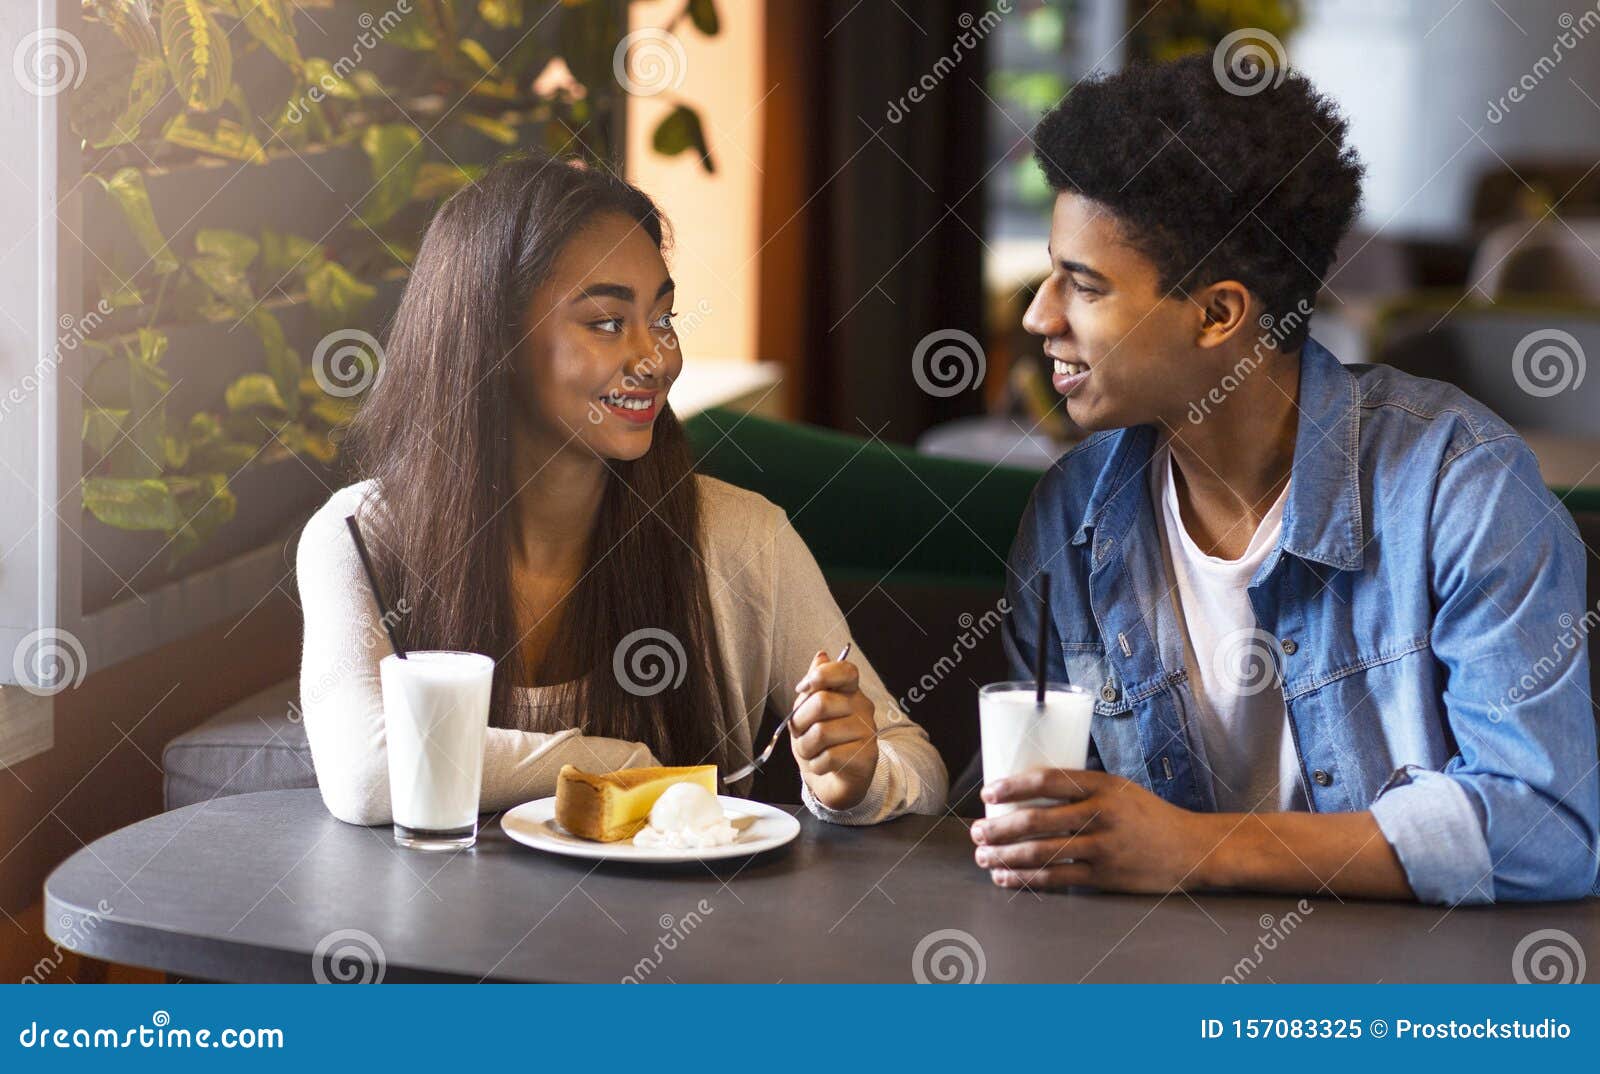 Dating café login